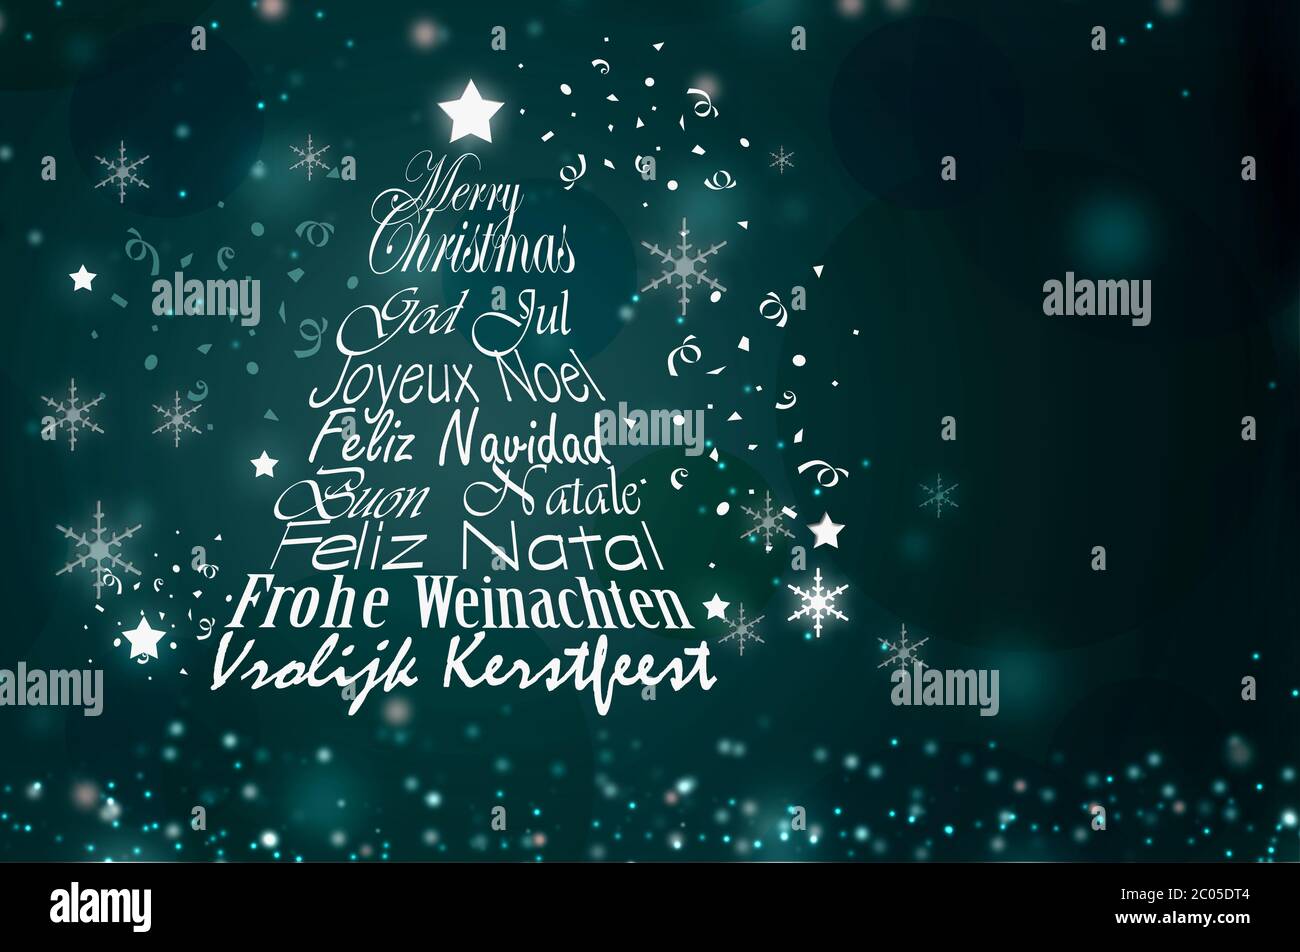 Forme de l'arbre de Noël à partir du texte Joyeux Noël dans différentes langues européennes Anglais, Français, Allemand, Portugais, Italien, Espagnol, Suédois, Néerlandais o Banque D'Images